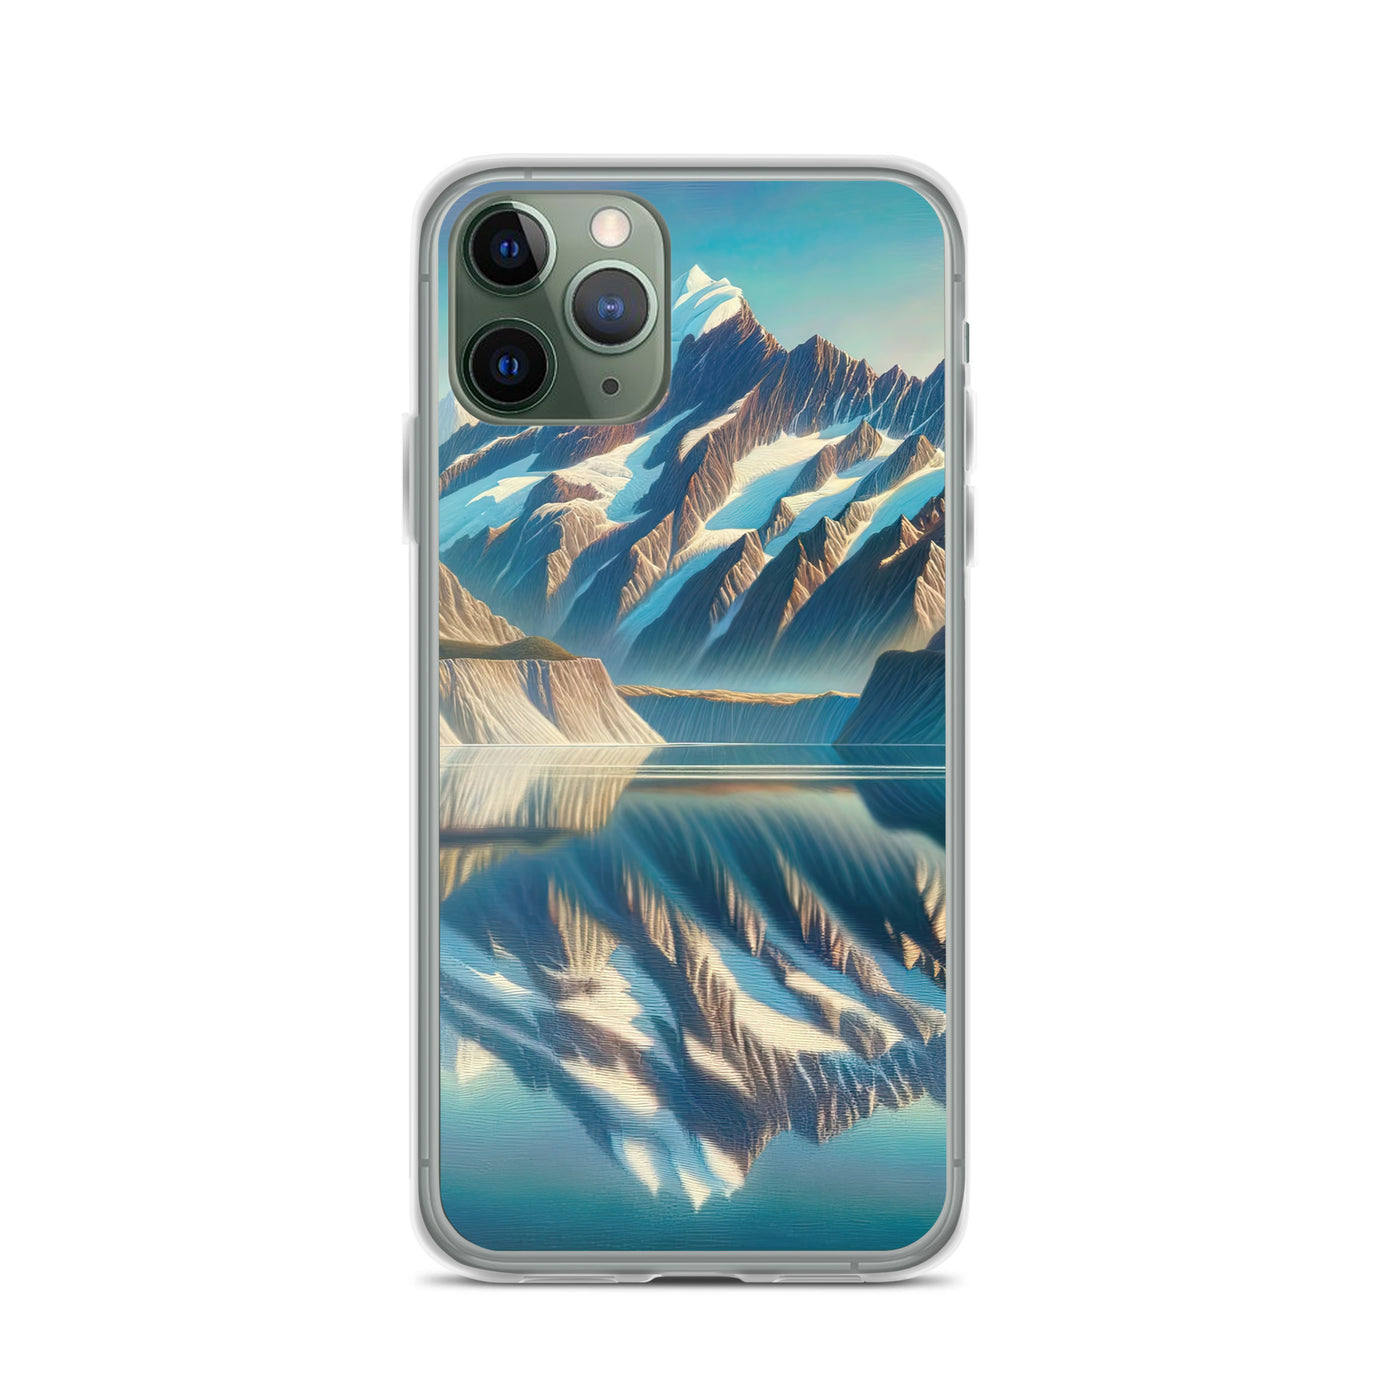 Ölgemälde eines unberührten Sees, der die Bergkette spiegelt - iPhone Schutzhülle (durchsichtig) berge xxx yyy zzz iPhone 11 Pro